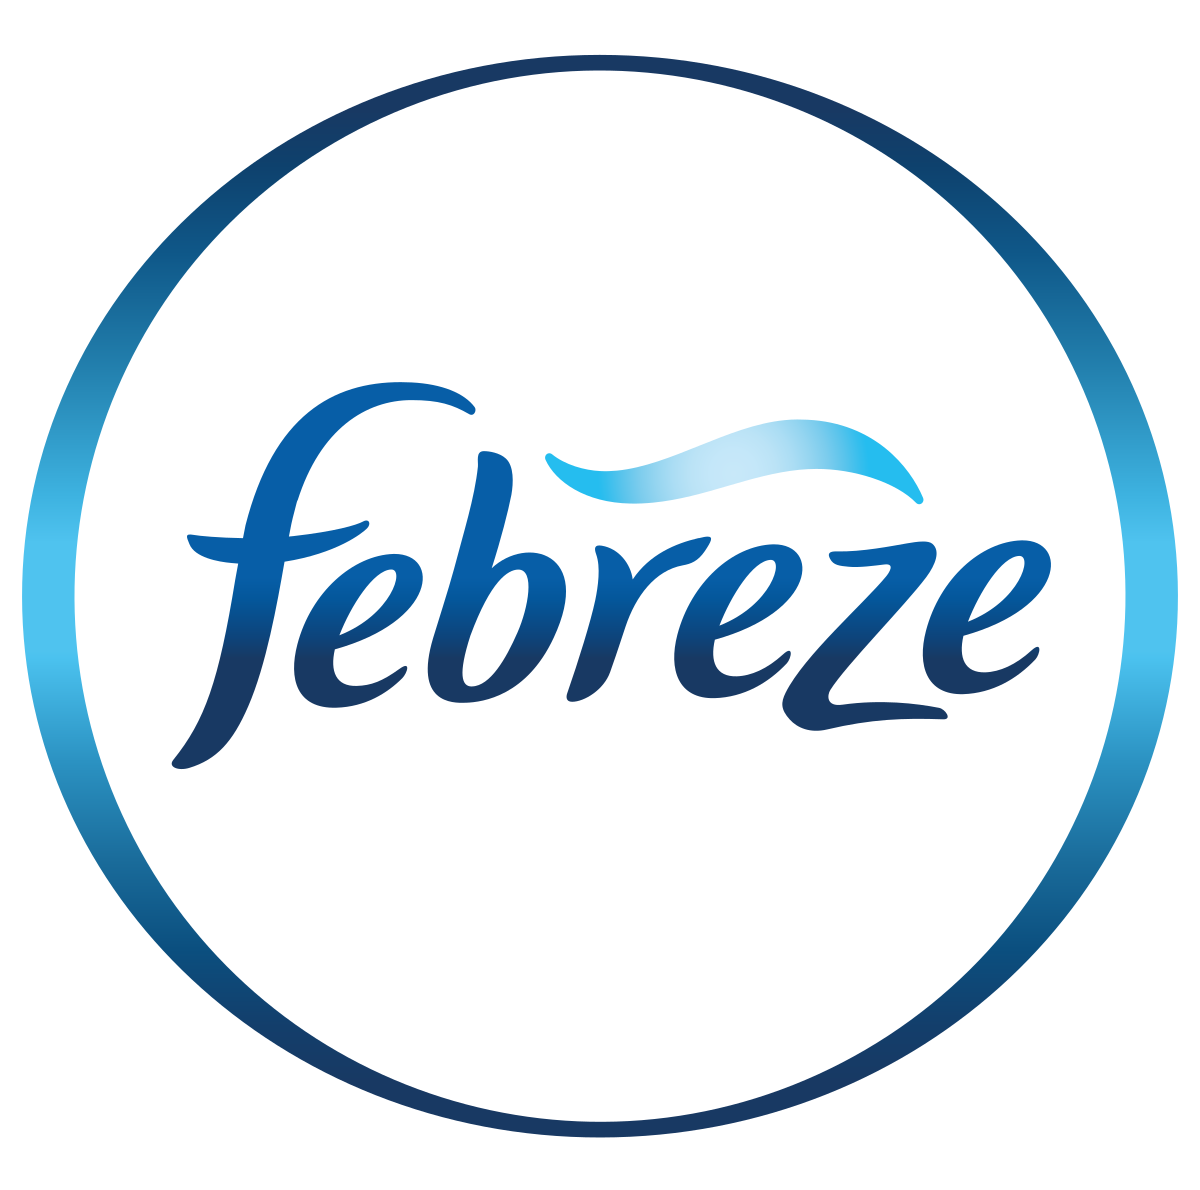 Febreze Air Freshener Spray Linen & Sky Scent 8.8 oz "2-PACK"